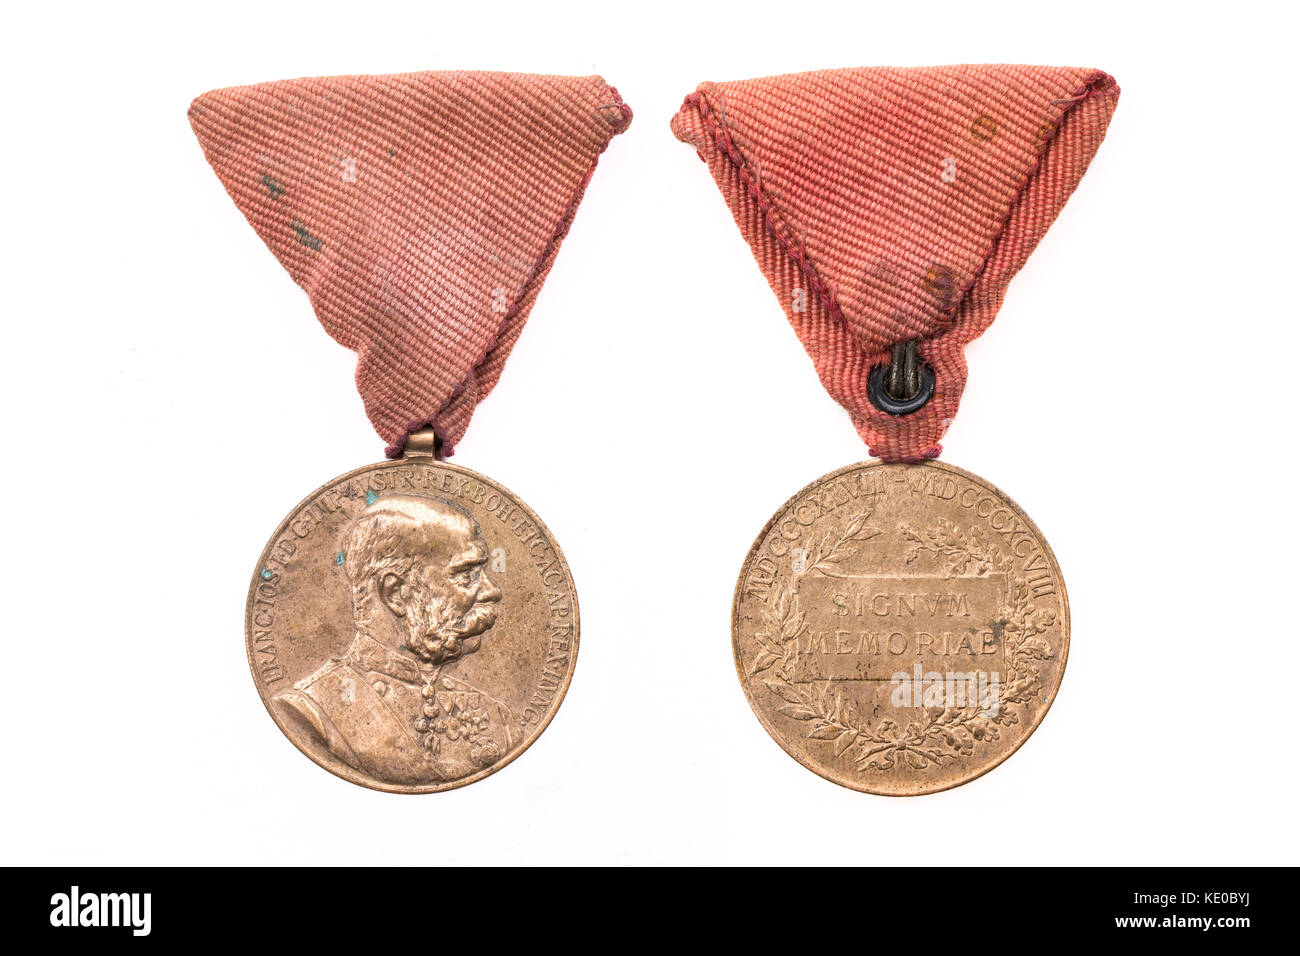 Médaille autrichienne en l'honneur de la première guerre mondiale 1 l'autriche-Hongrie contre la France et la Russie 1914-1918. Également connu sous le nom de 'signum memoria'. Banque D'Images